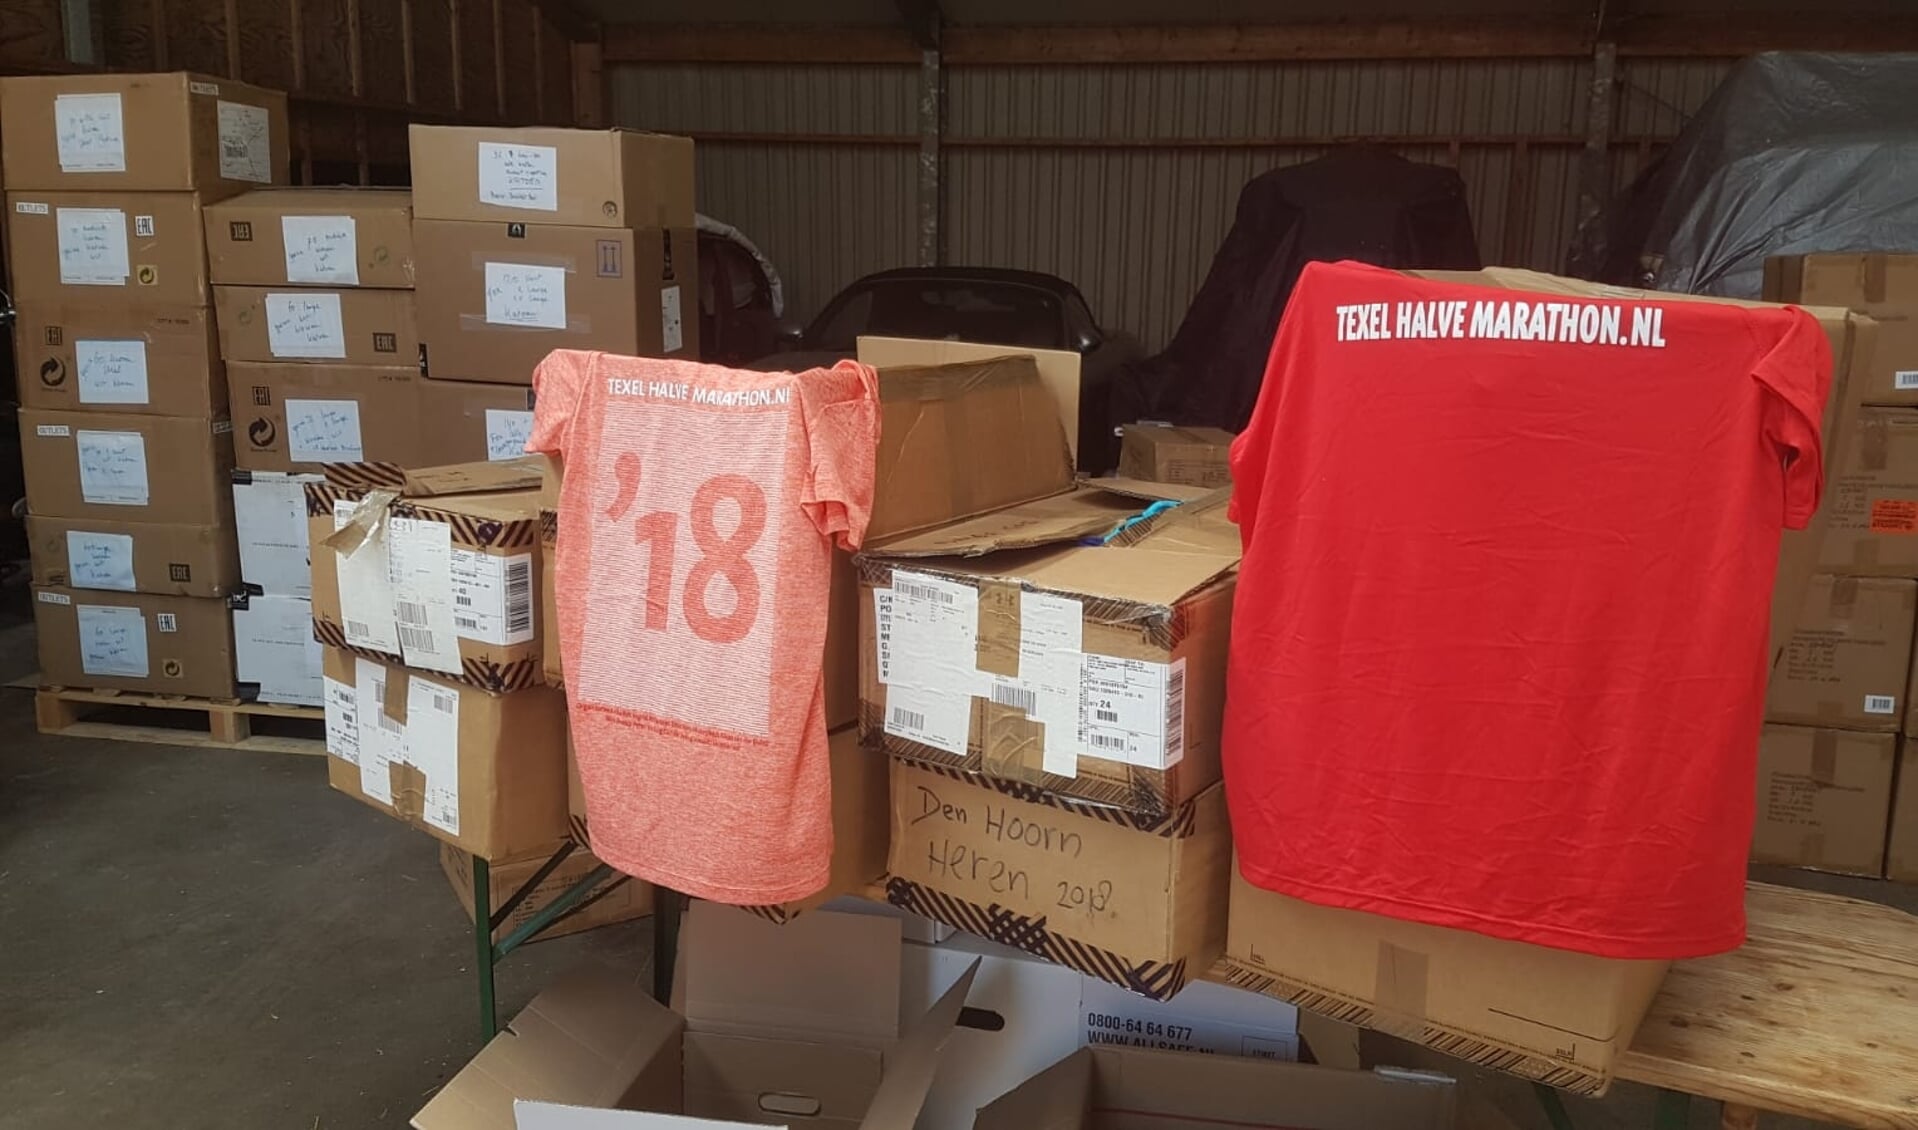 Overgebleven shirts van vorige edities van de Texel Halve Marathon.